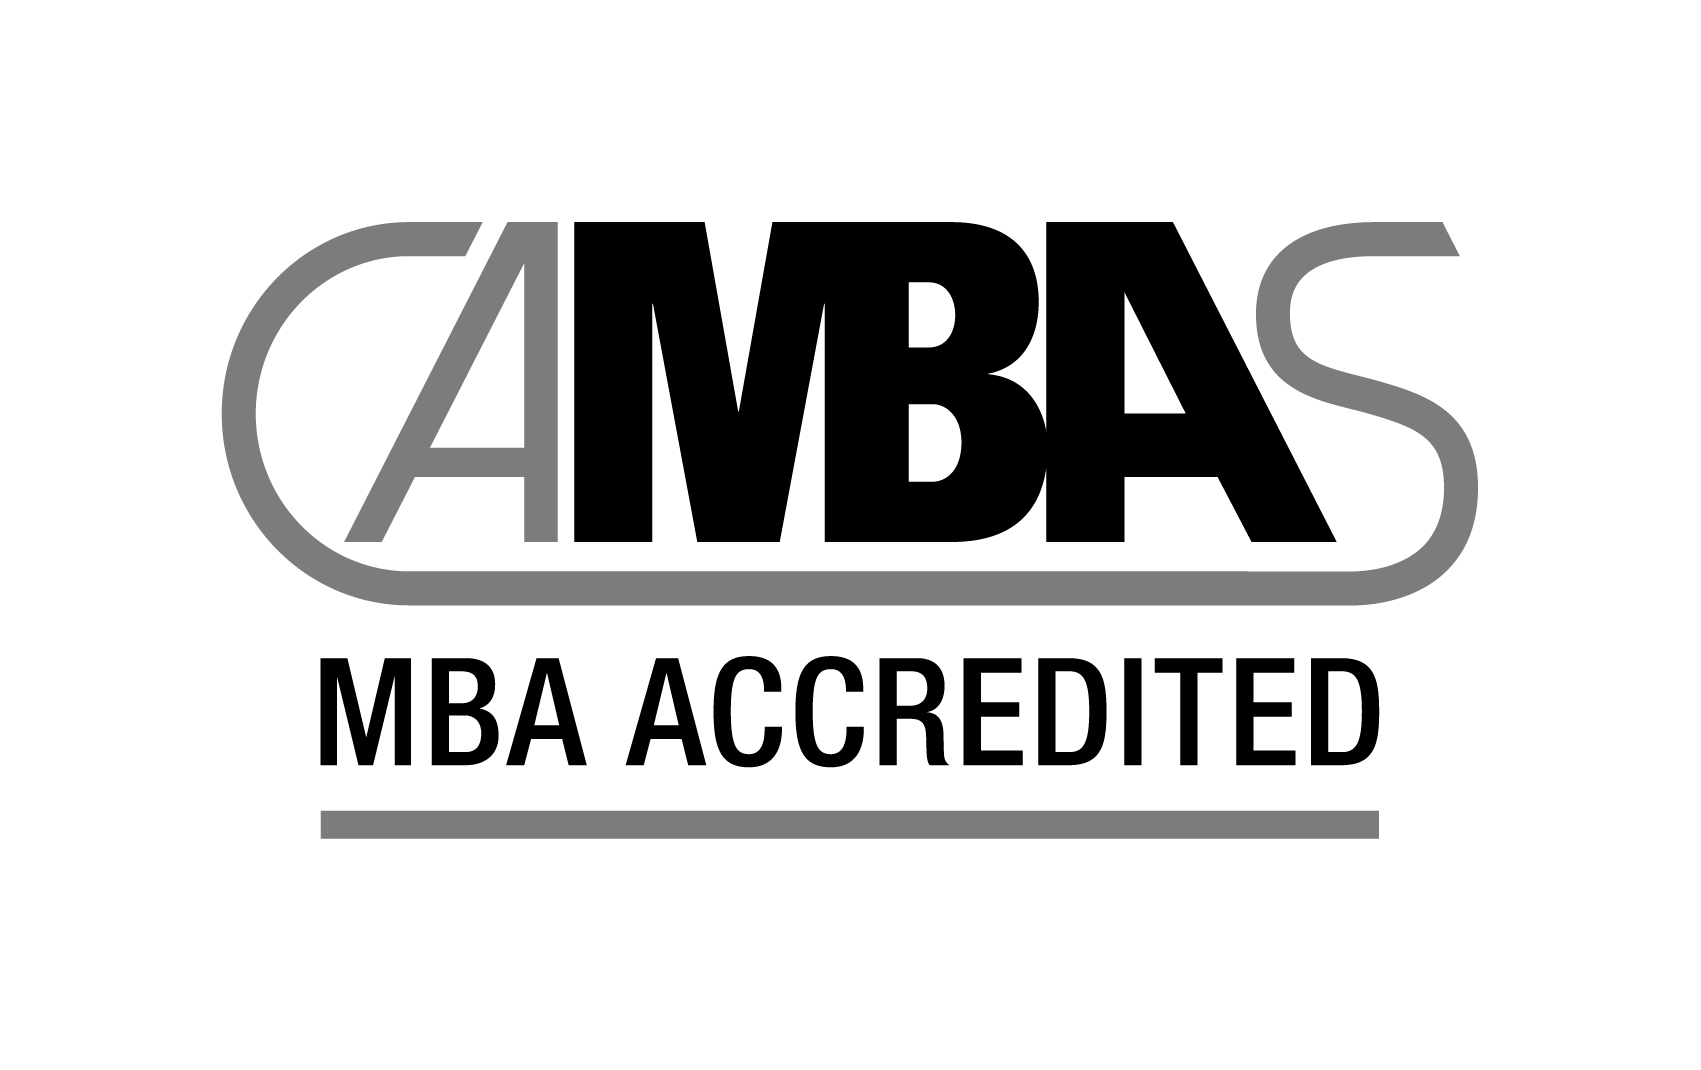 Programu MBARE byla udělena akreditace CAMBAS